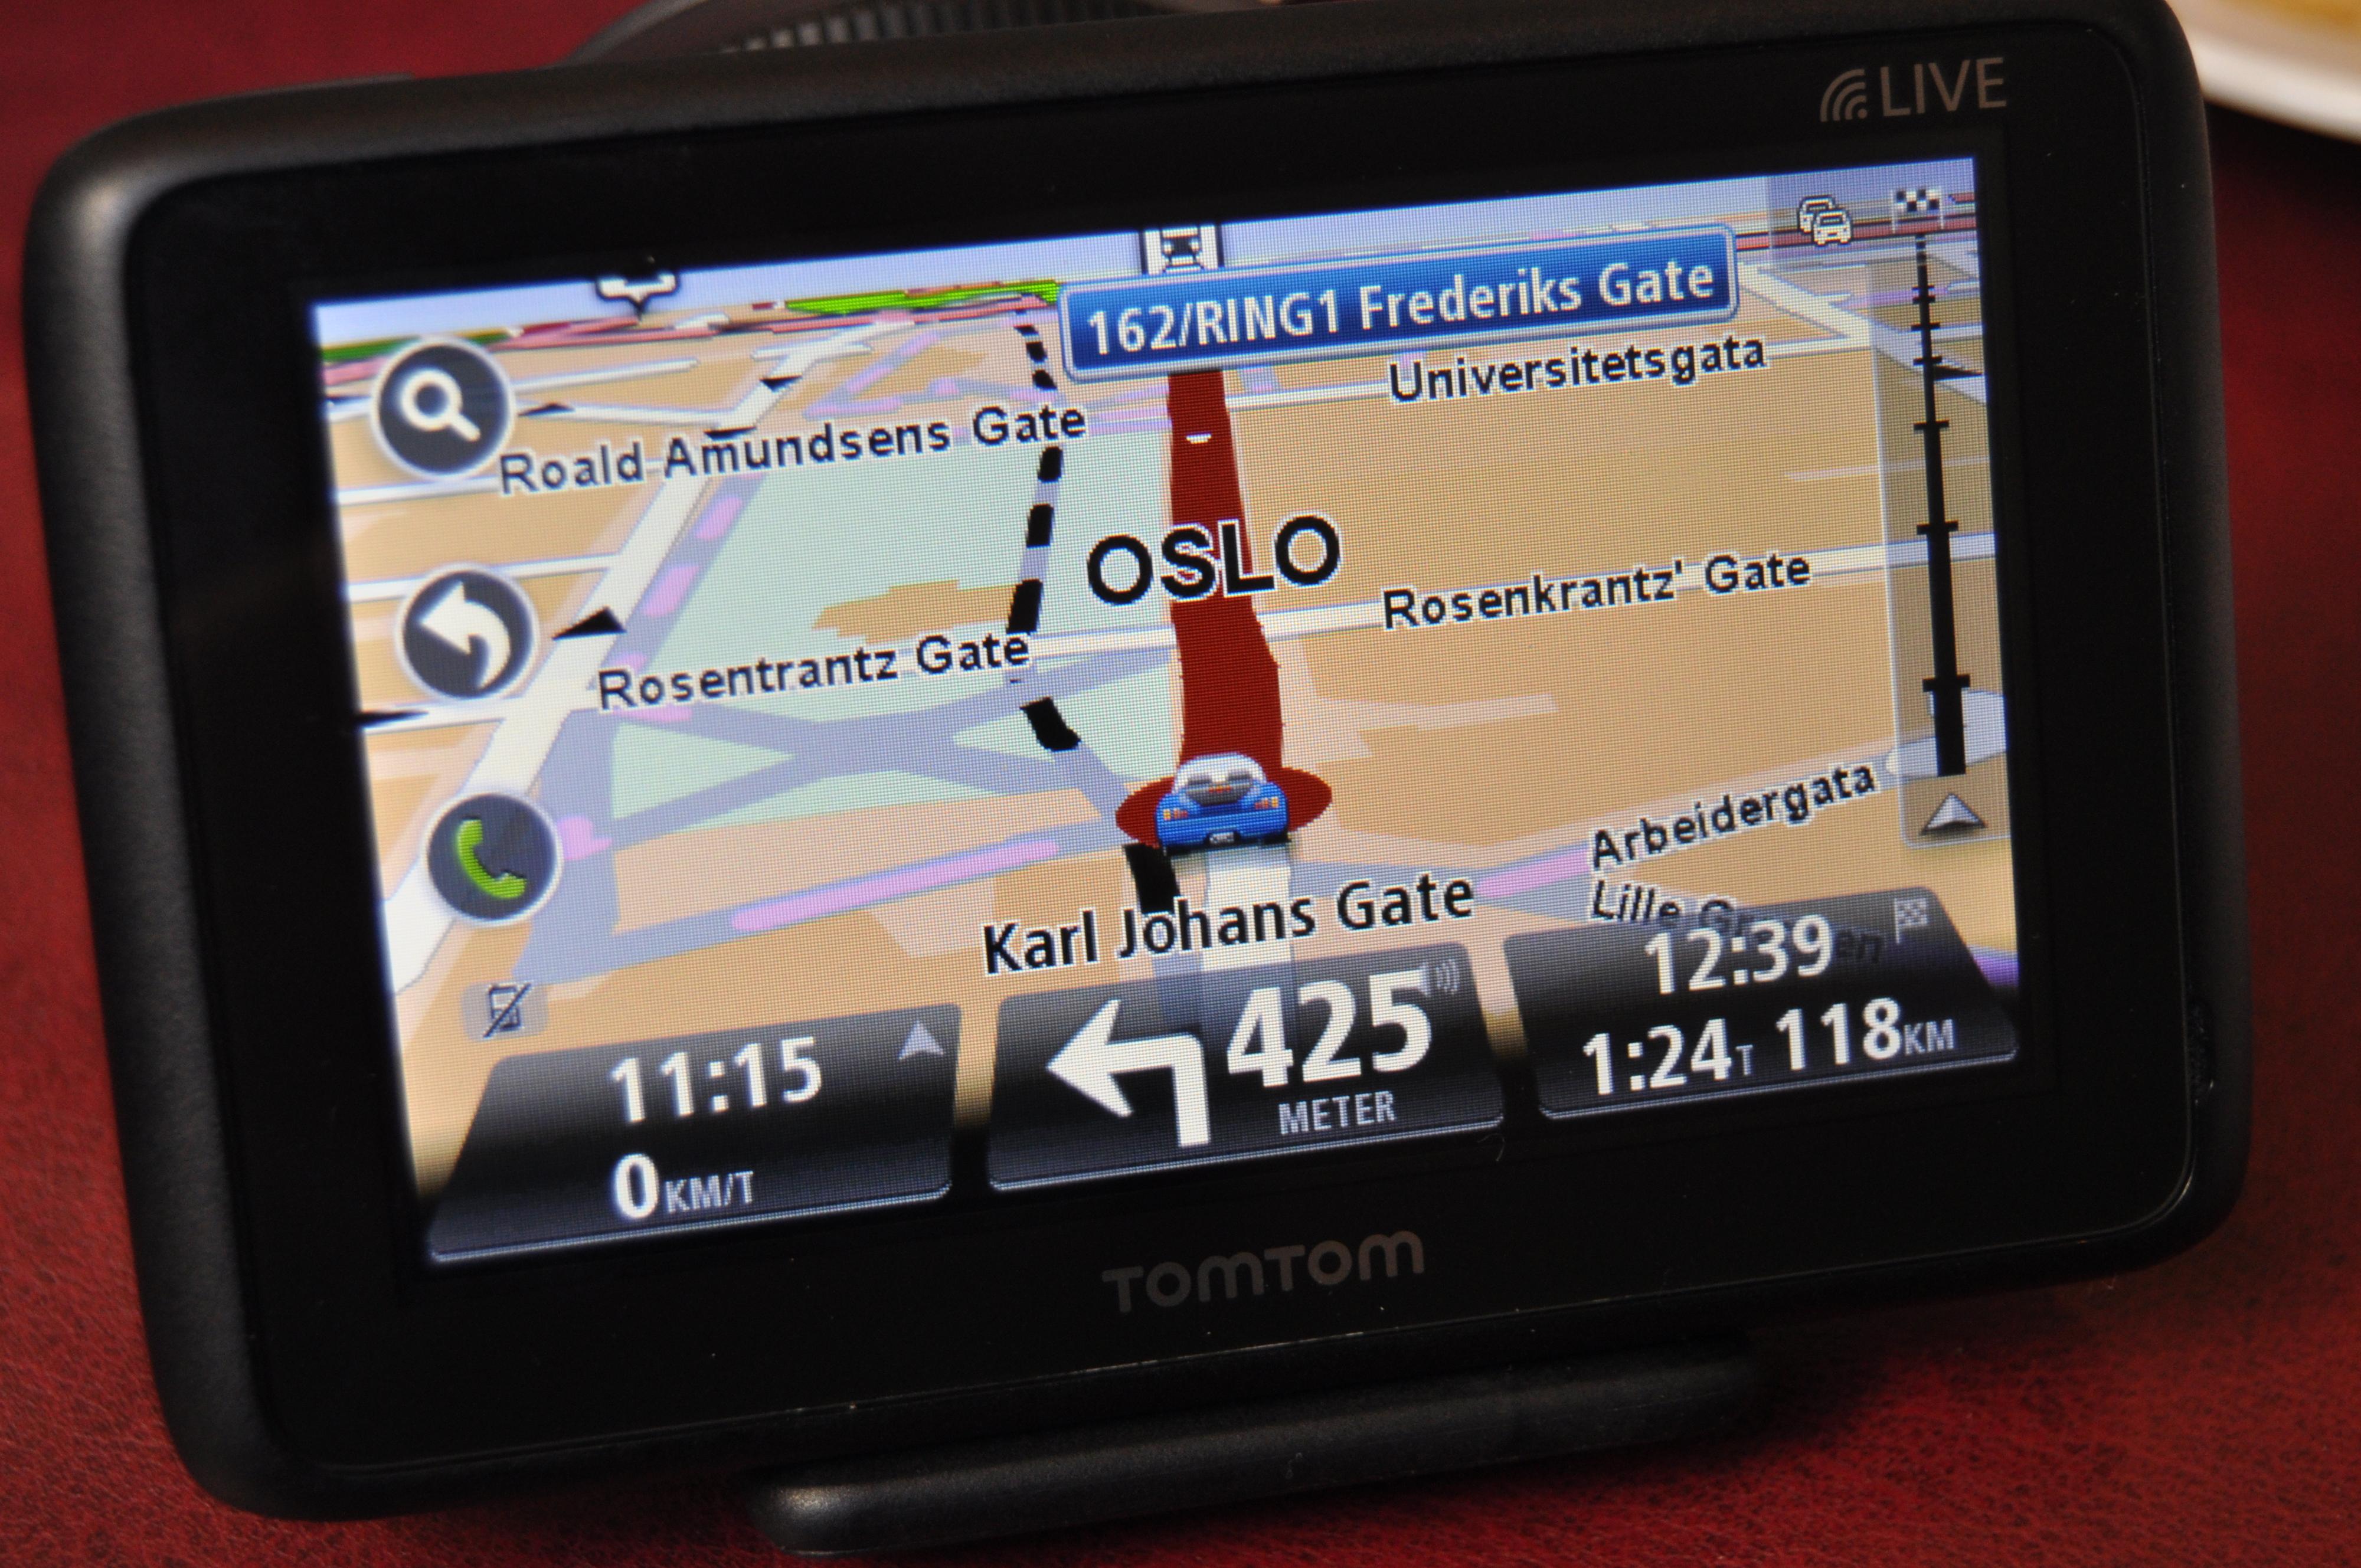 En av de nye GPS-ene som ble lansert i dag. Det meste på skjermen har gjennomgått en oppussing.